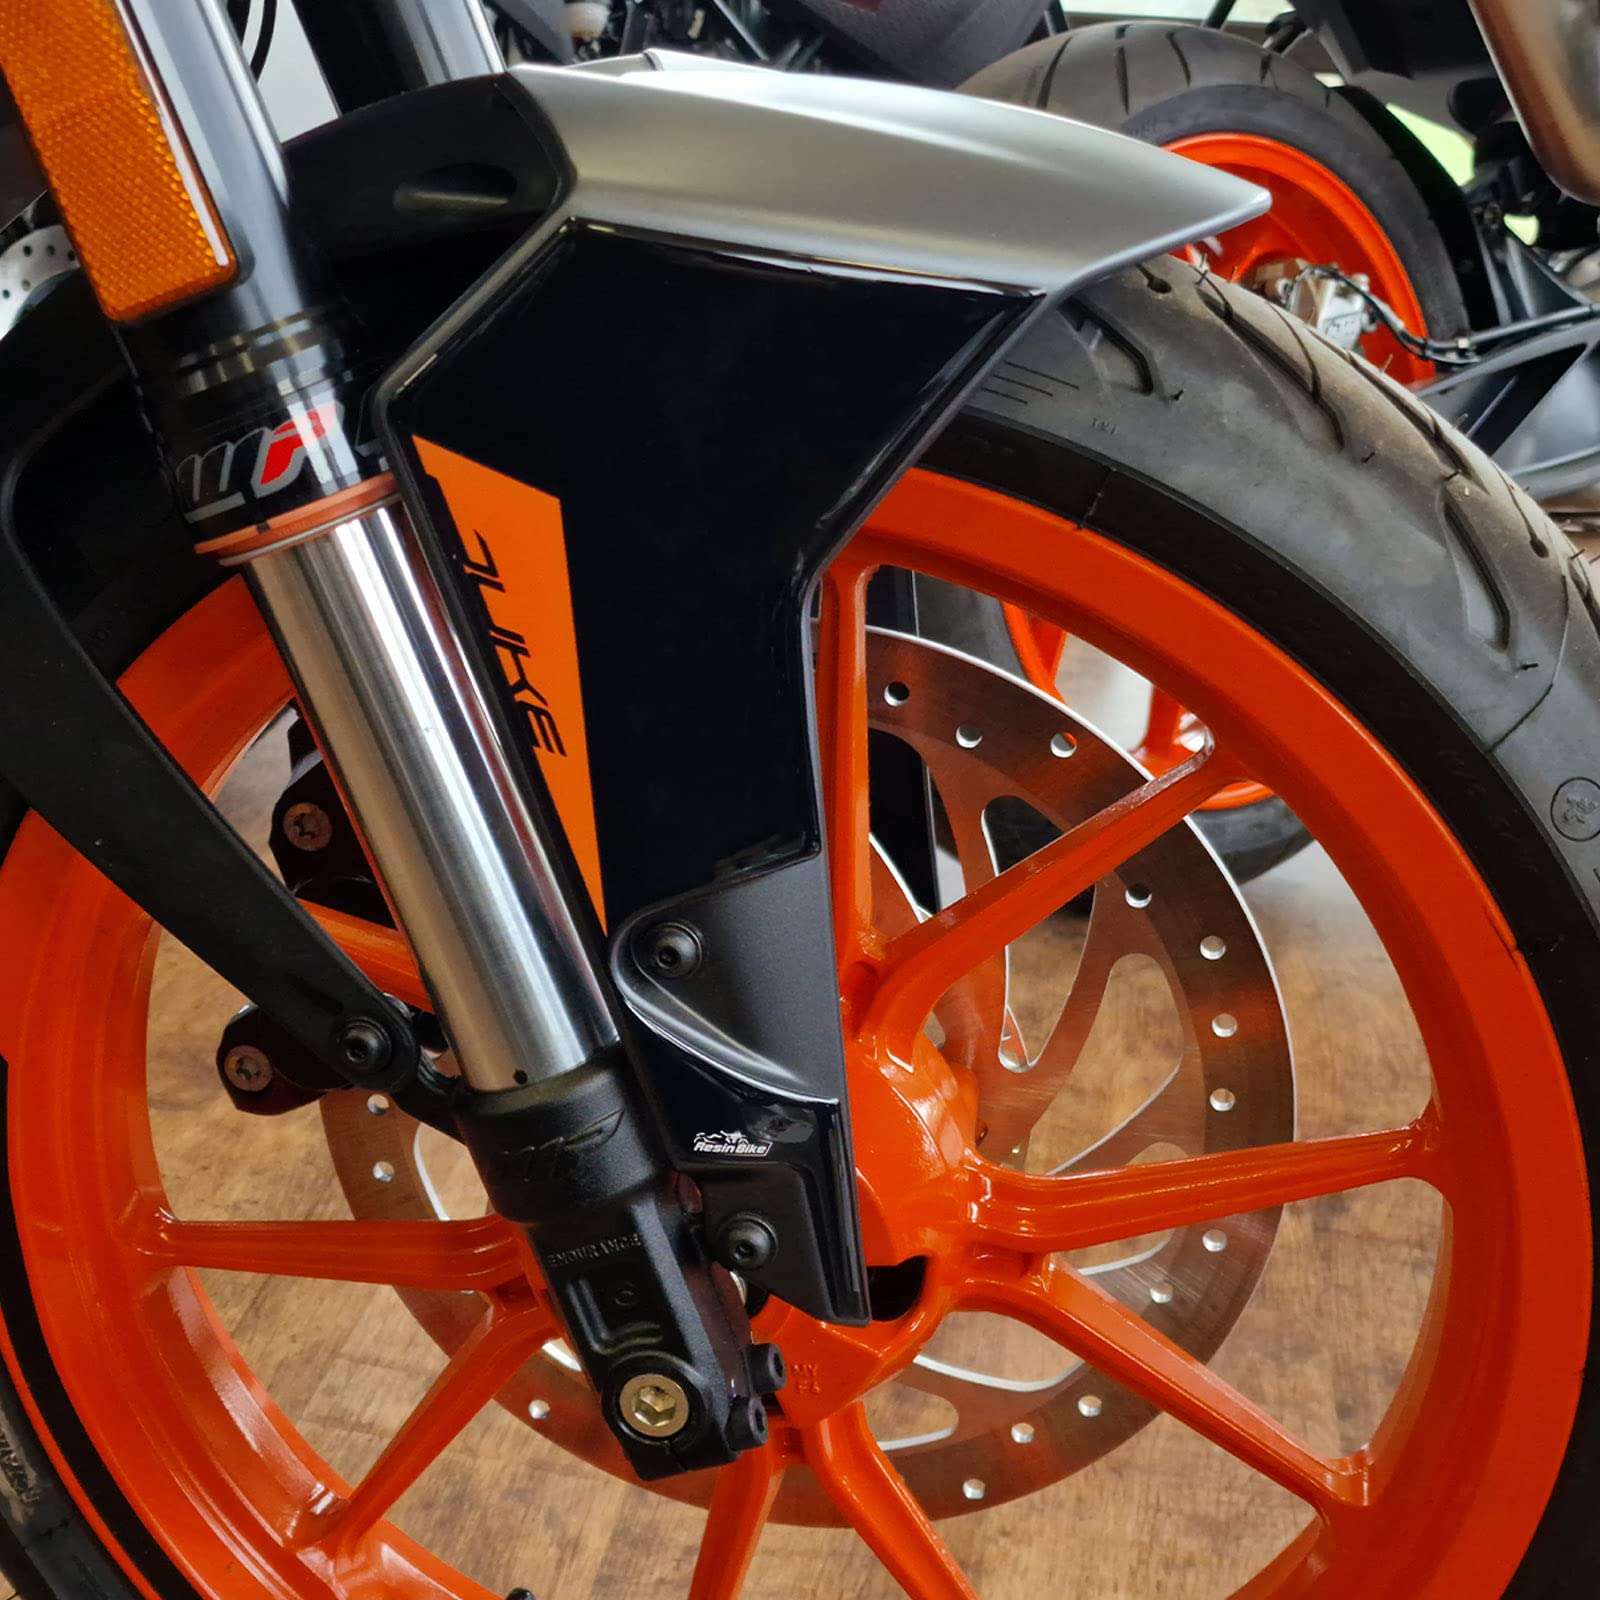 Resin Bike Aufkleber für Motorrad Kompatibel mit KTM Duke 125 200 250 390 2021-2022. Kotflügelschutz vor Stößen und Kratzern. 3D-Harzklebstoff - Stickers - Made in Italy von Resin Bike